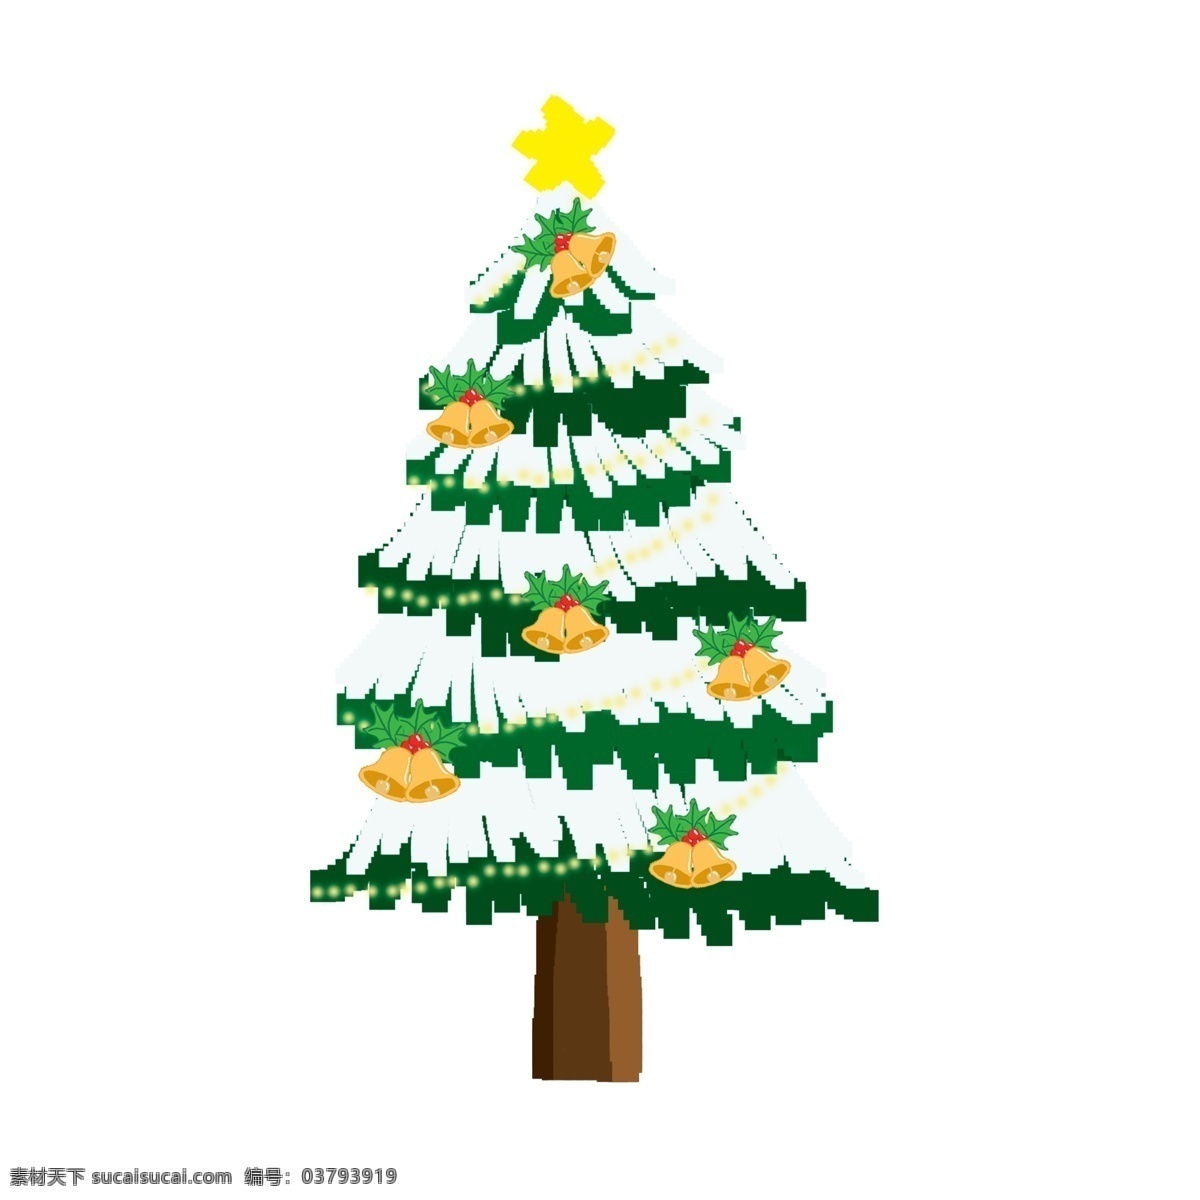 清新 手绘 圣诞树 植物 装饰 圣诞节 插画 装饰图案 卡通设计